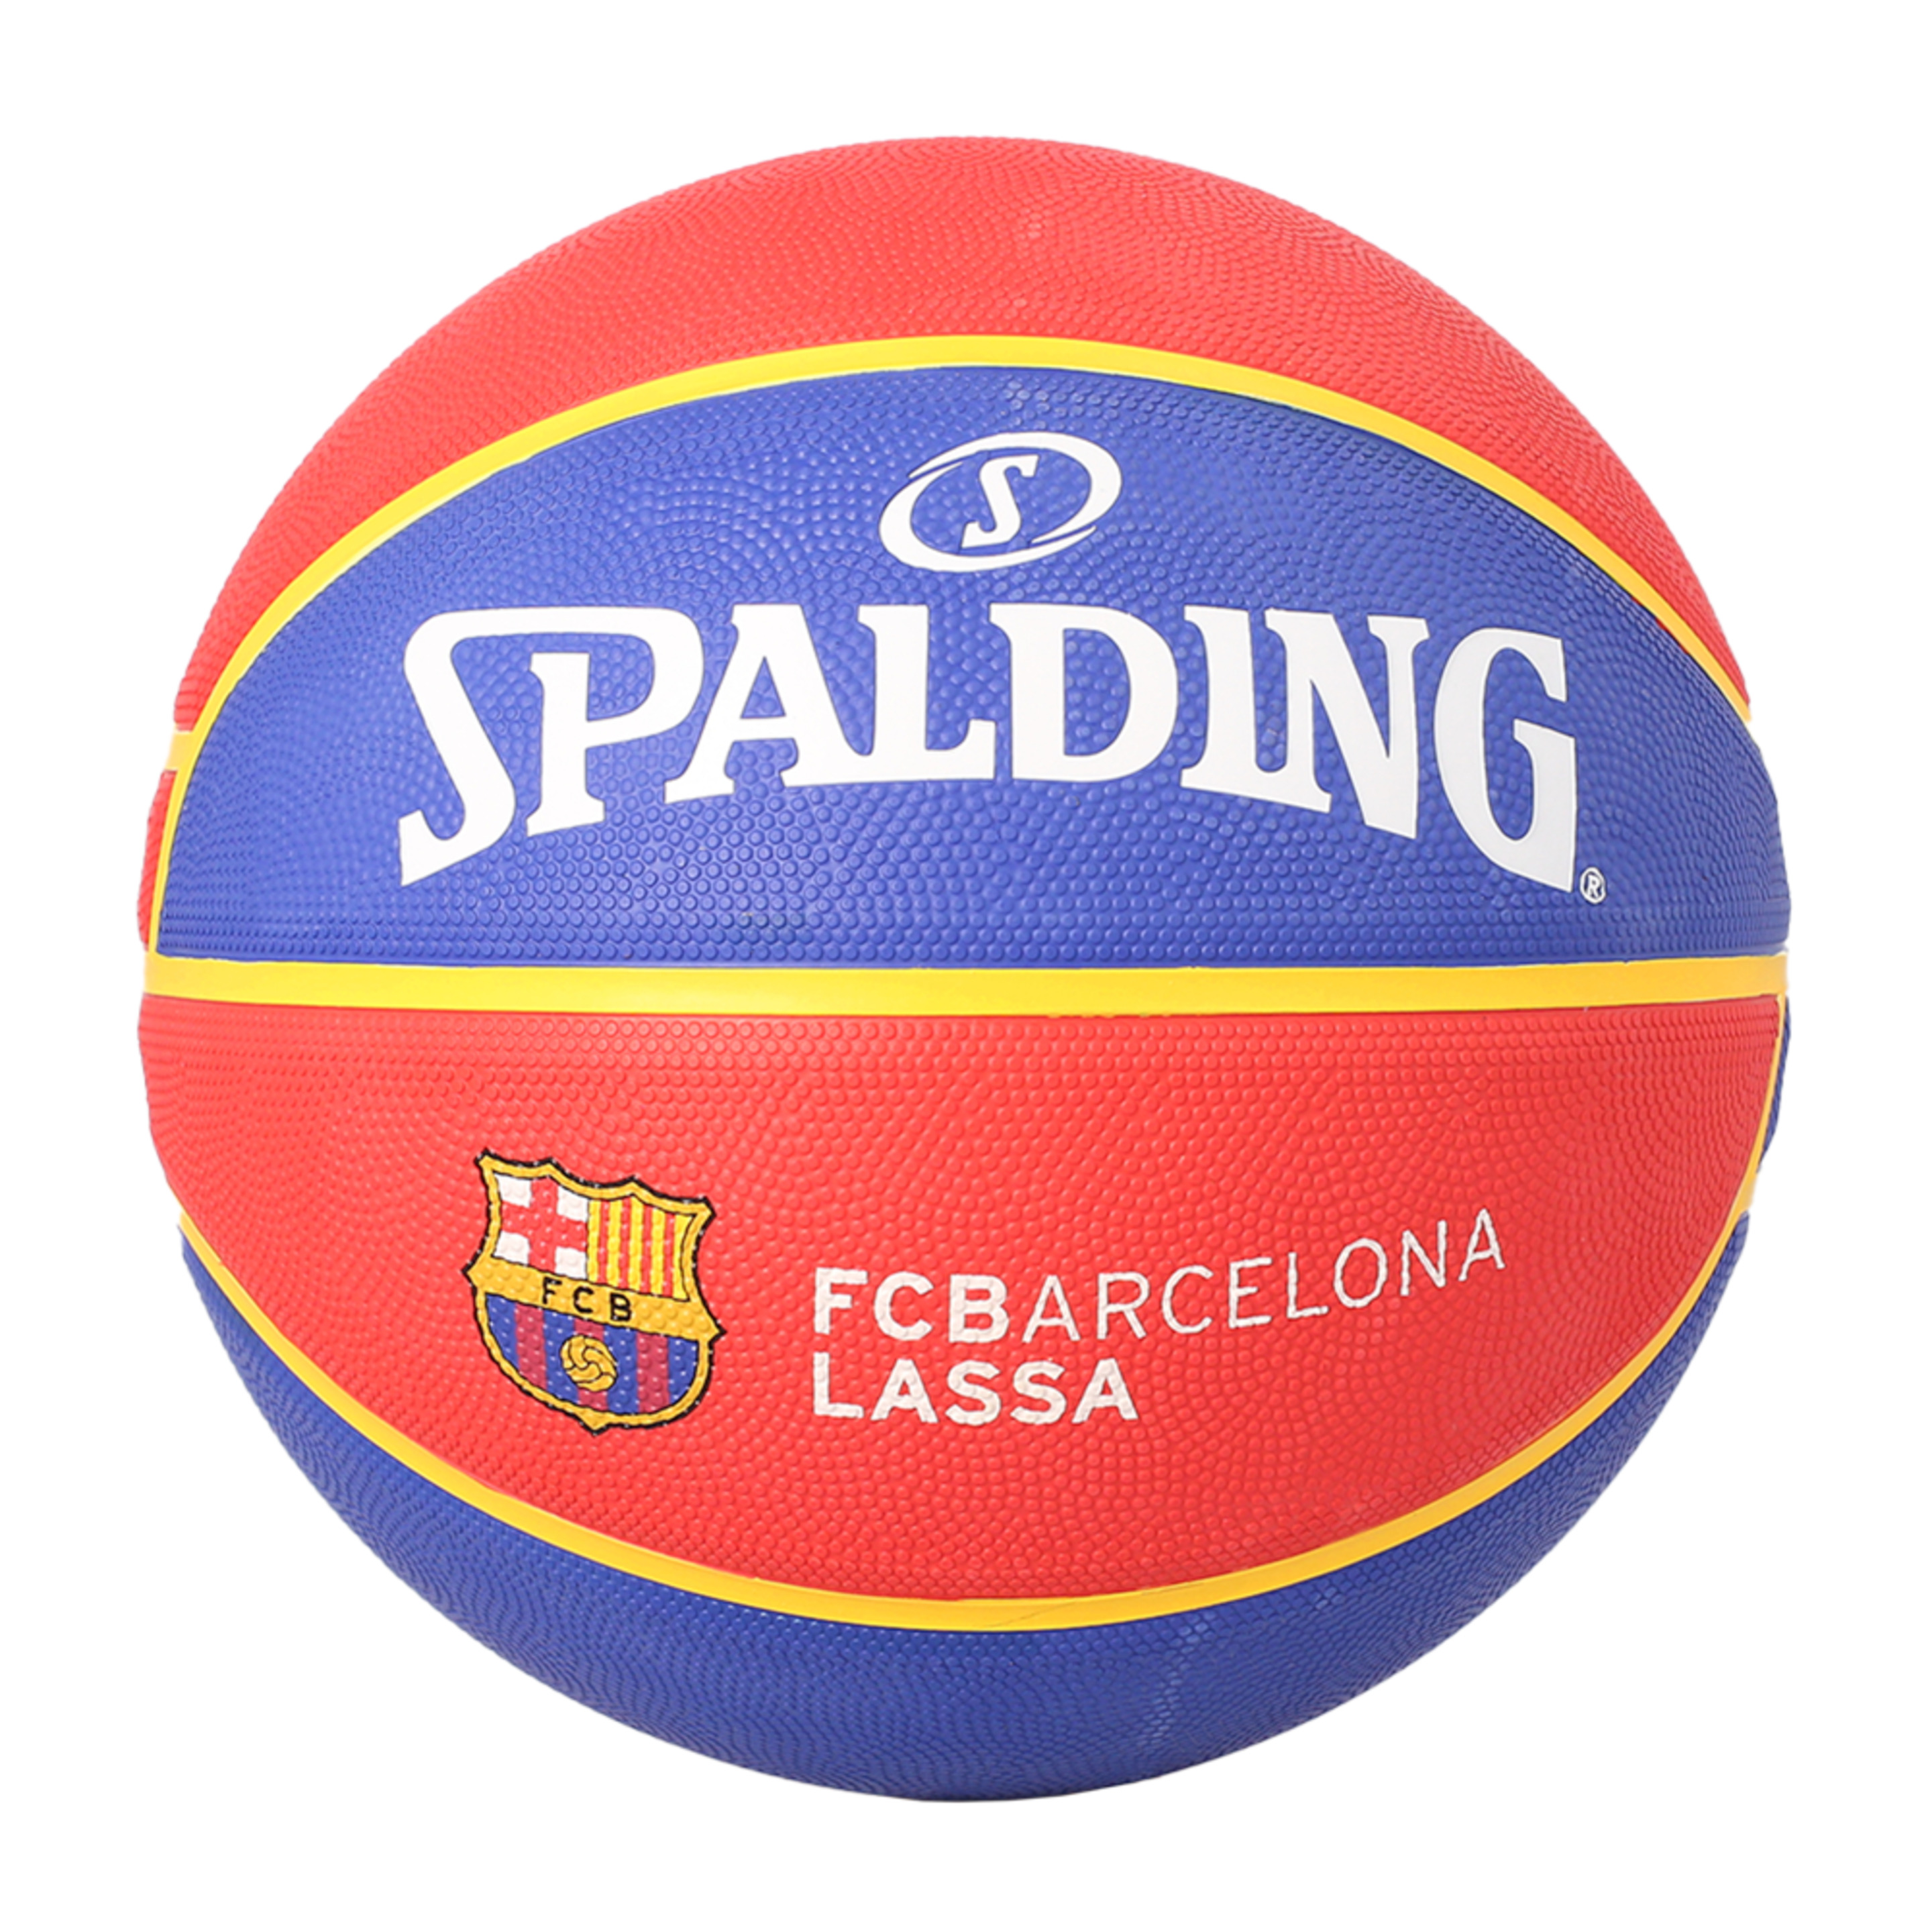 Balón De Baloncesto Spalding Fc Barcelona - Azul Claro/Rojo - Serie Euroleague  MKP